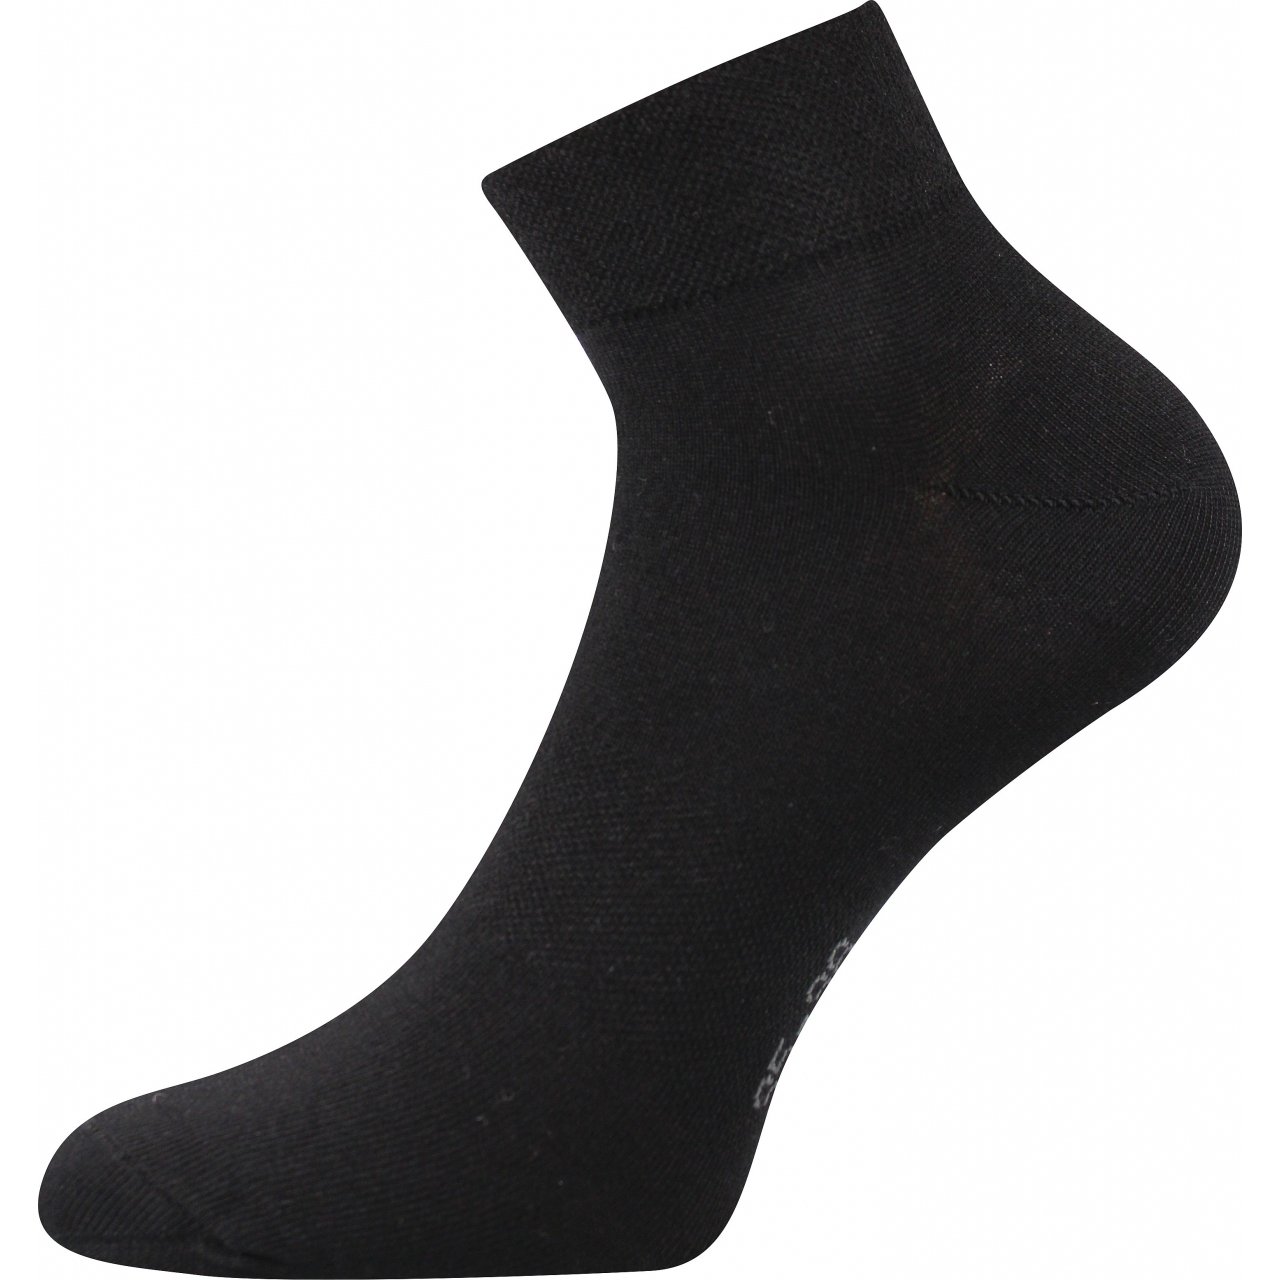 Ponožky unisex Lonka Raban - černé, 35-38